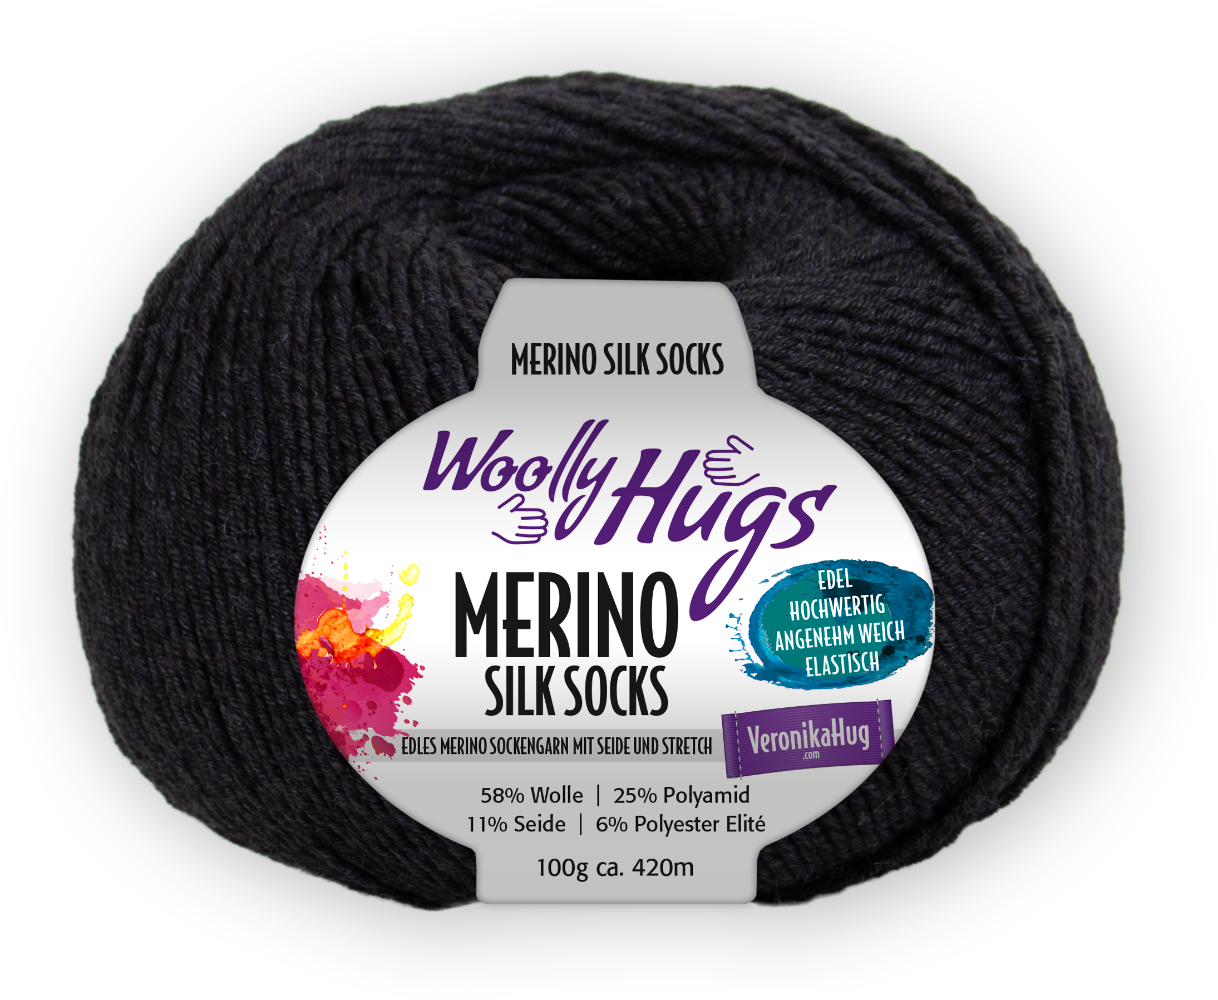 Merino Silk Socks Stretch, 4-fach von Woolly Hugs 0298 - anthrazit